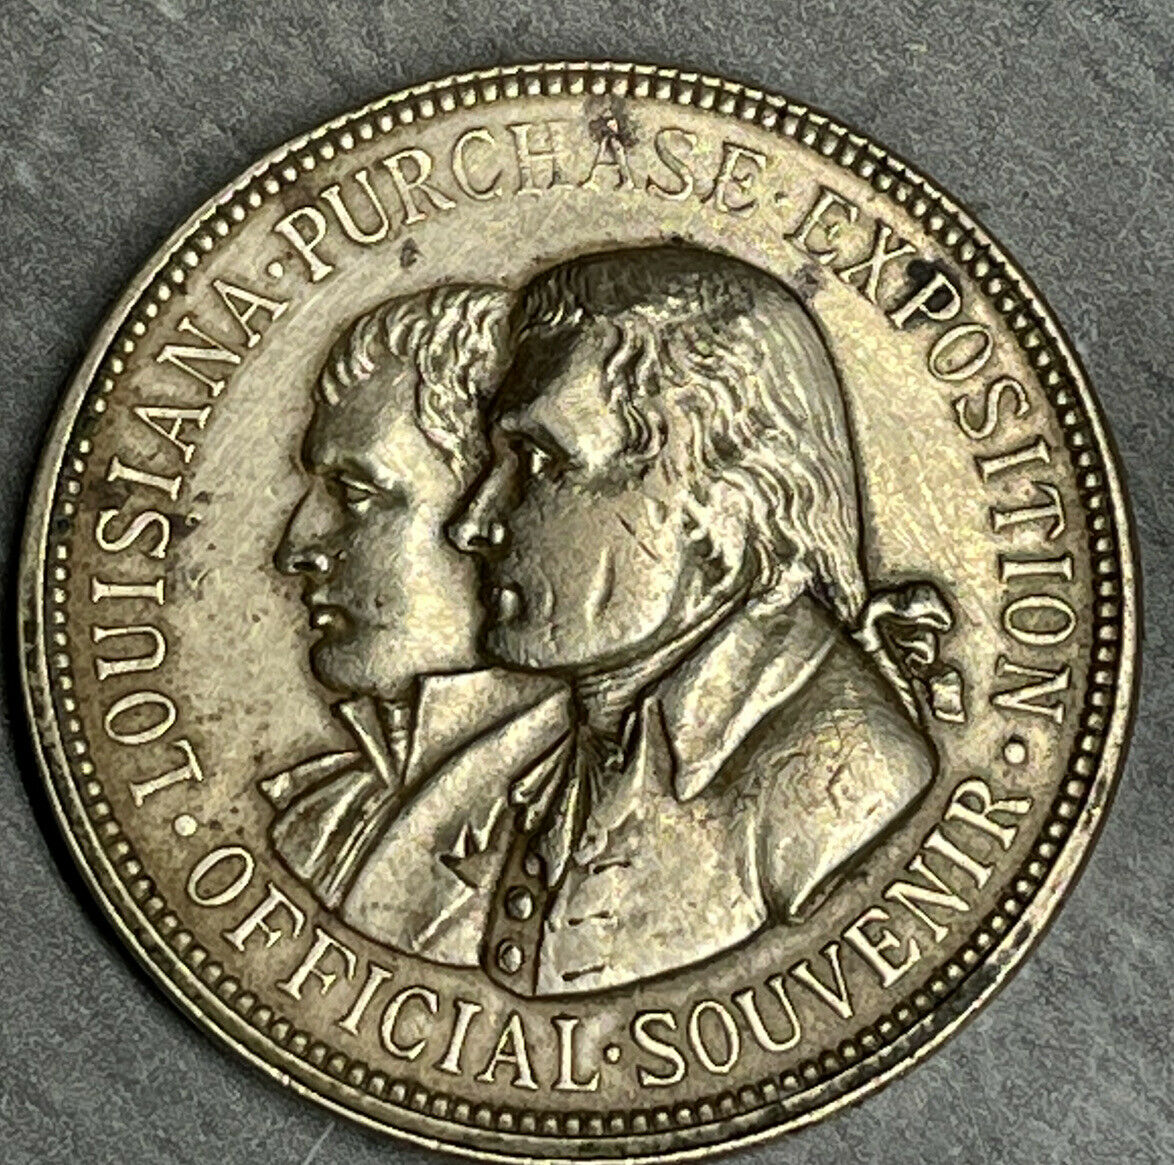 So-called Dollar - 1904 - Louisiana Purchase Exposition Official Souvenir Medal